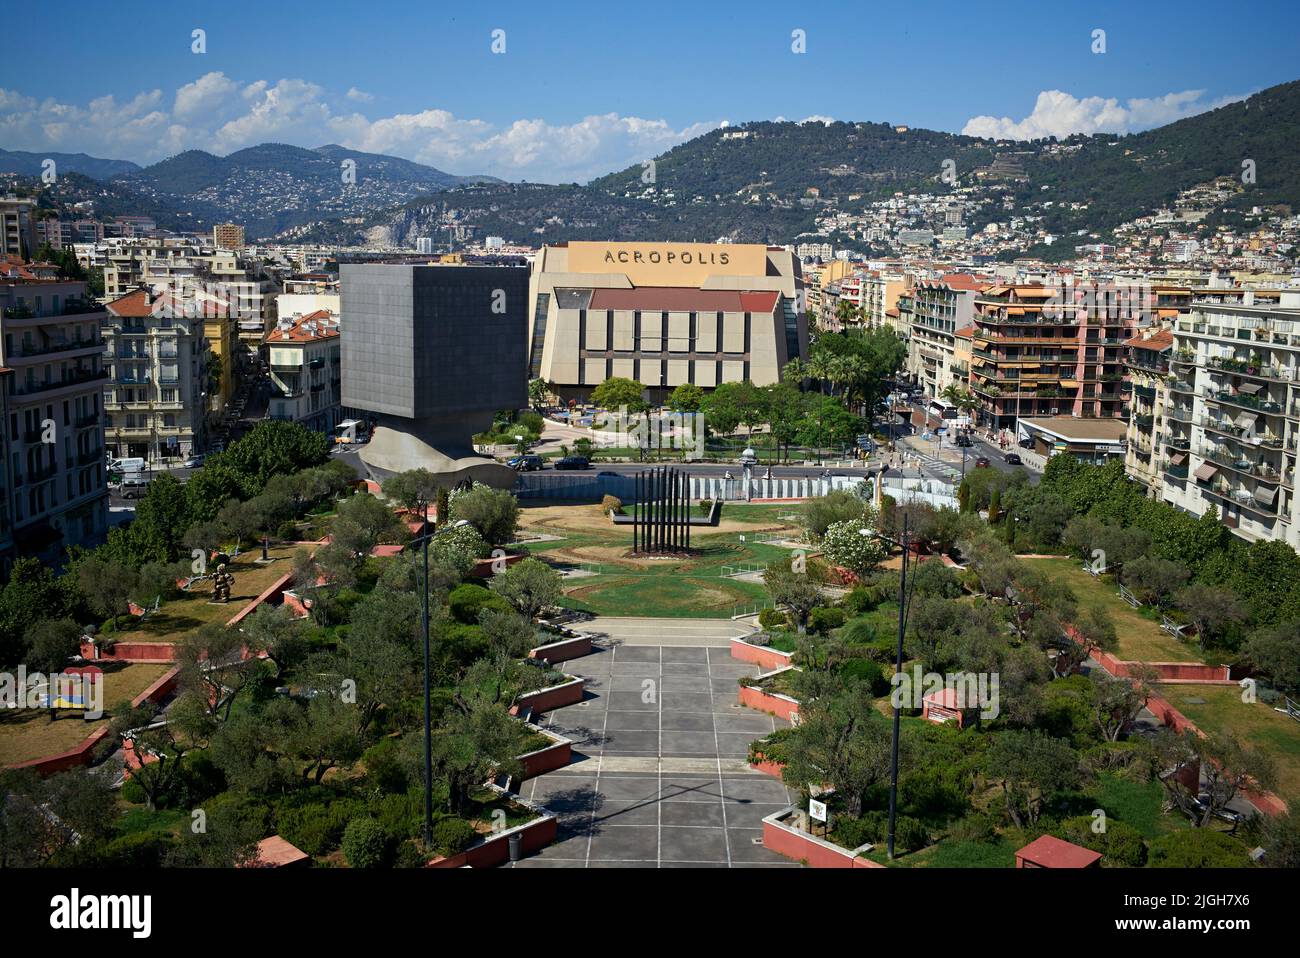 El Palais des Congrès Acropolis es un centro de convenciones ubicado en Niza, Francia. Alberga varias convenciones, ferias, conciertos, óperas. Foto de stock